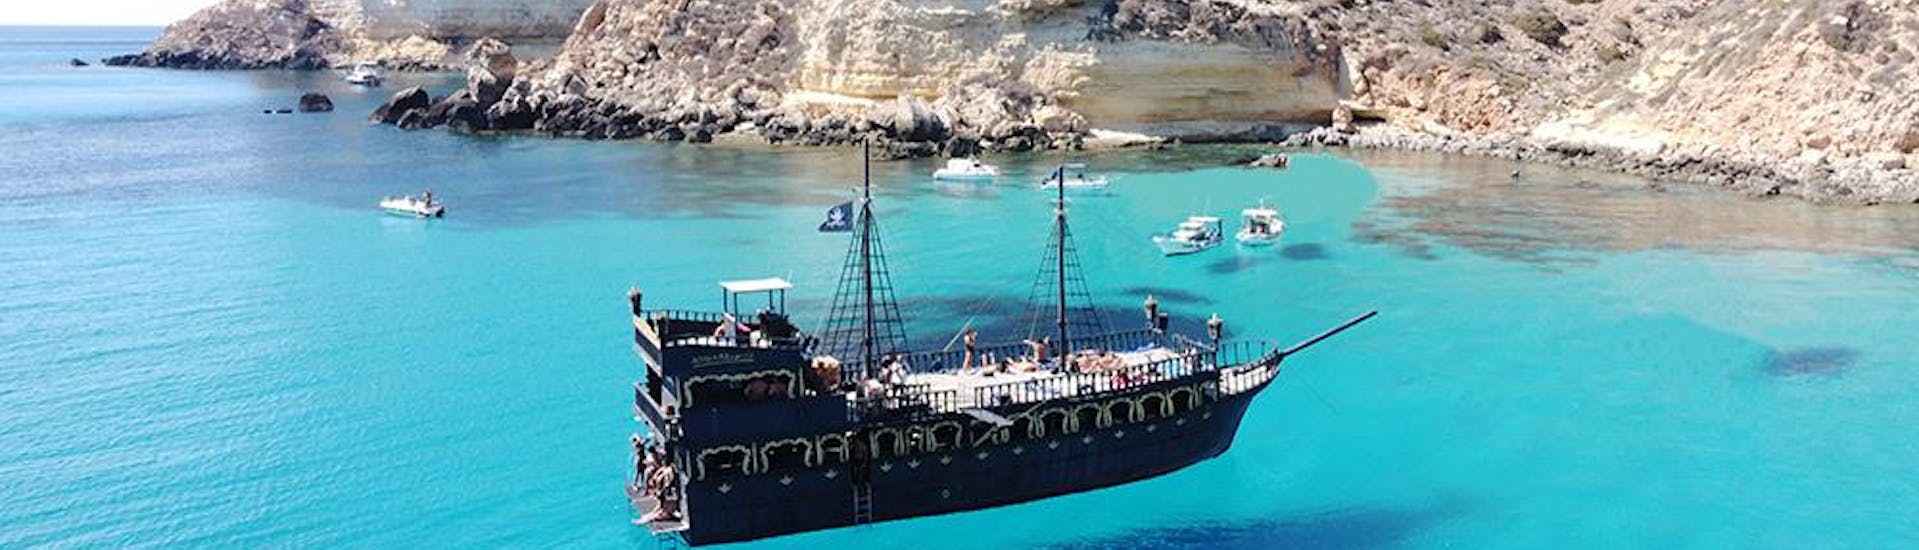 Il galeone pirata Galeone Adriana nelle acque di Lampedusa.